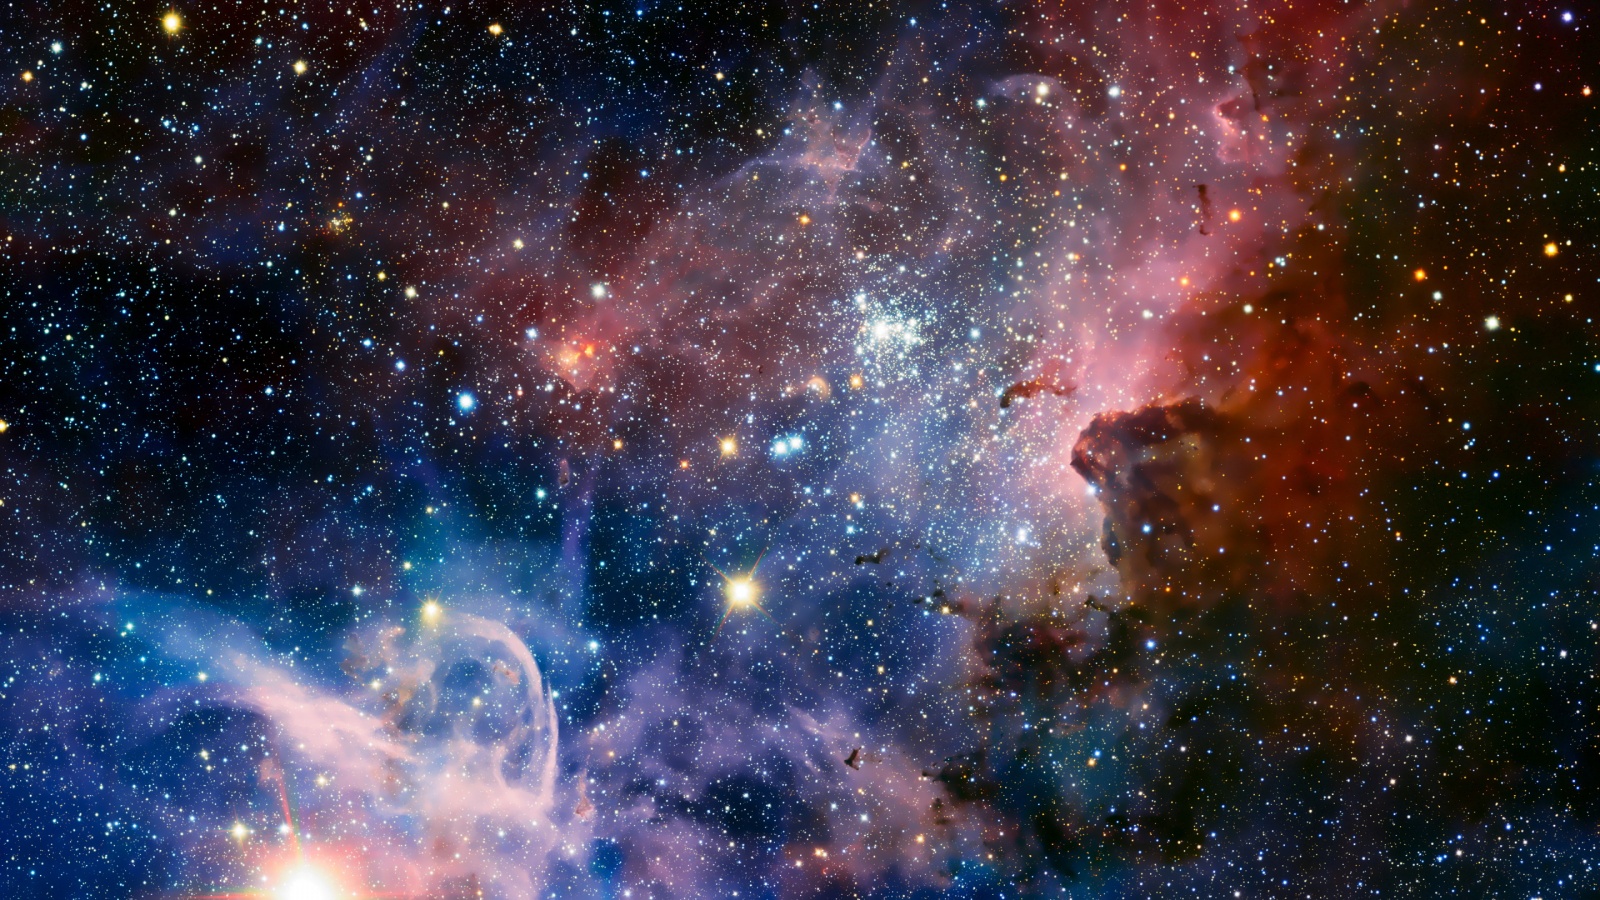 Carina nebula Wallpaper in 1600x900 HD Resolutions